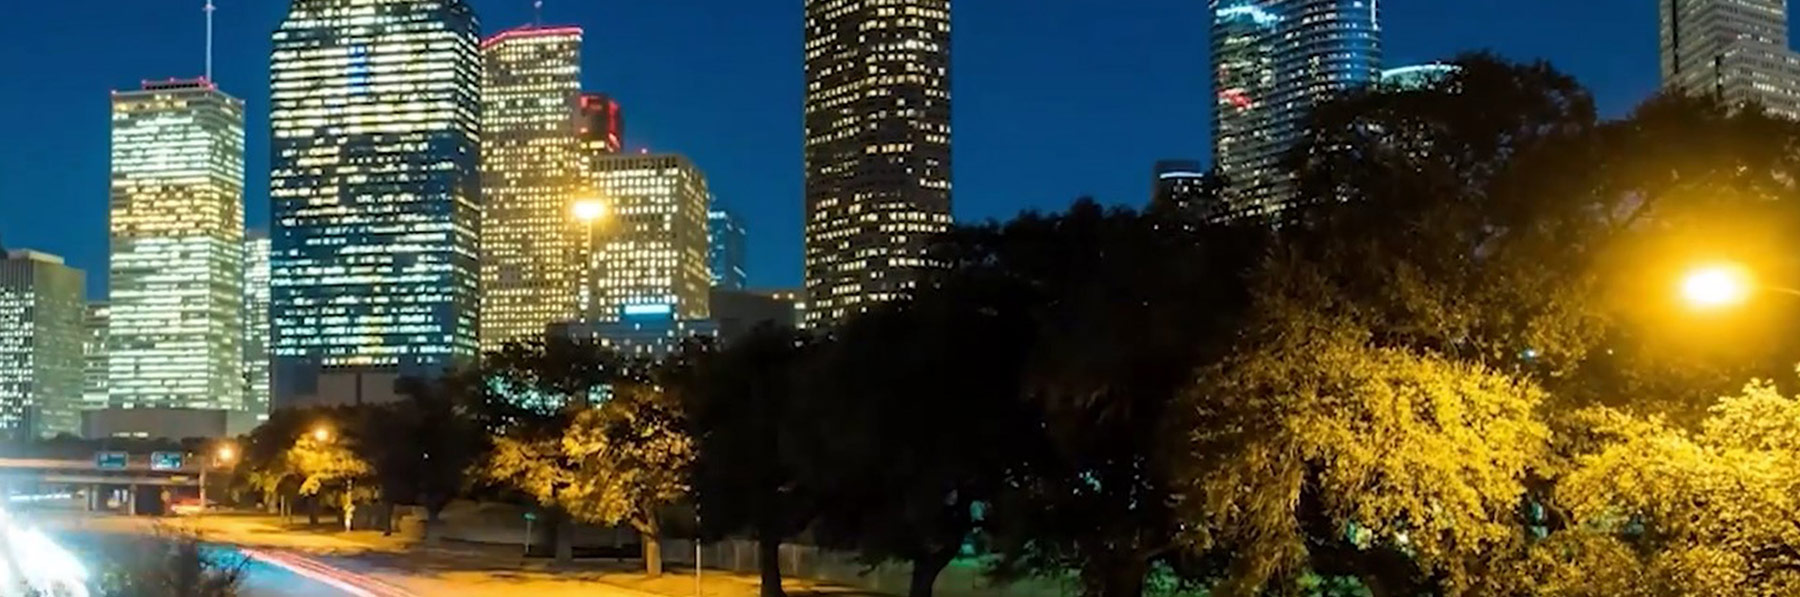 Houston cityscape night